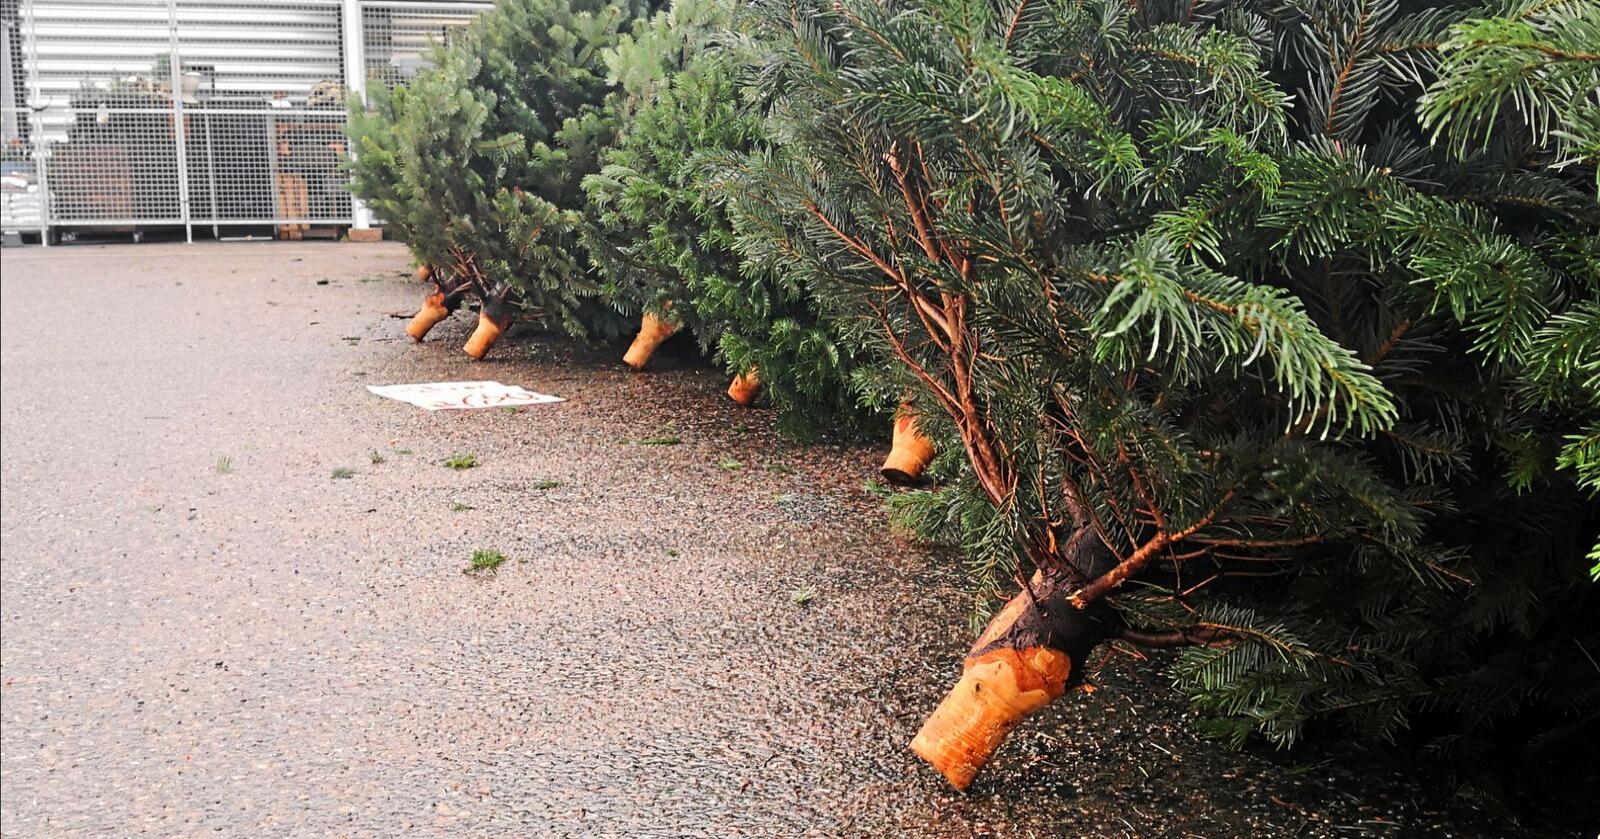 Prisen på norske juletrær er ventet å øke i år. Foto: Jon-Fredrik Bækgaard Klausen